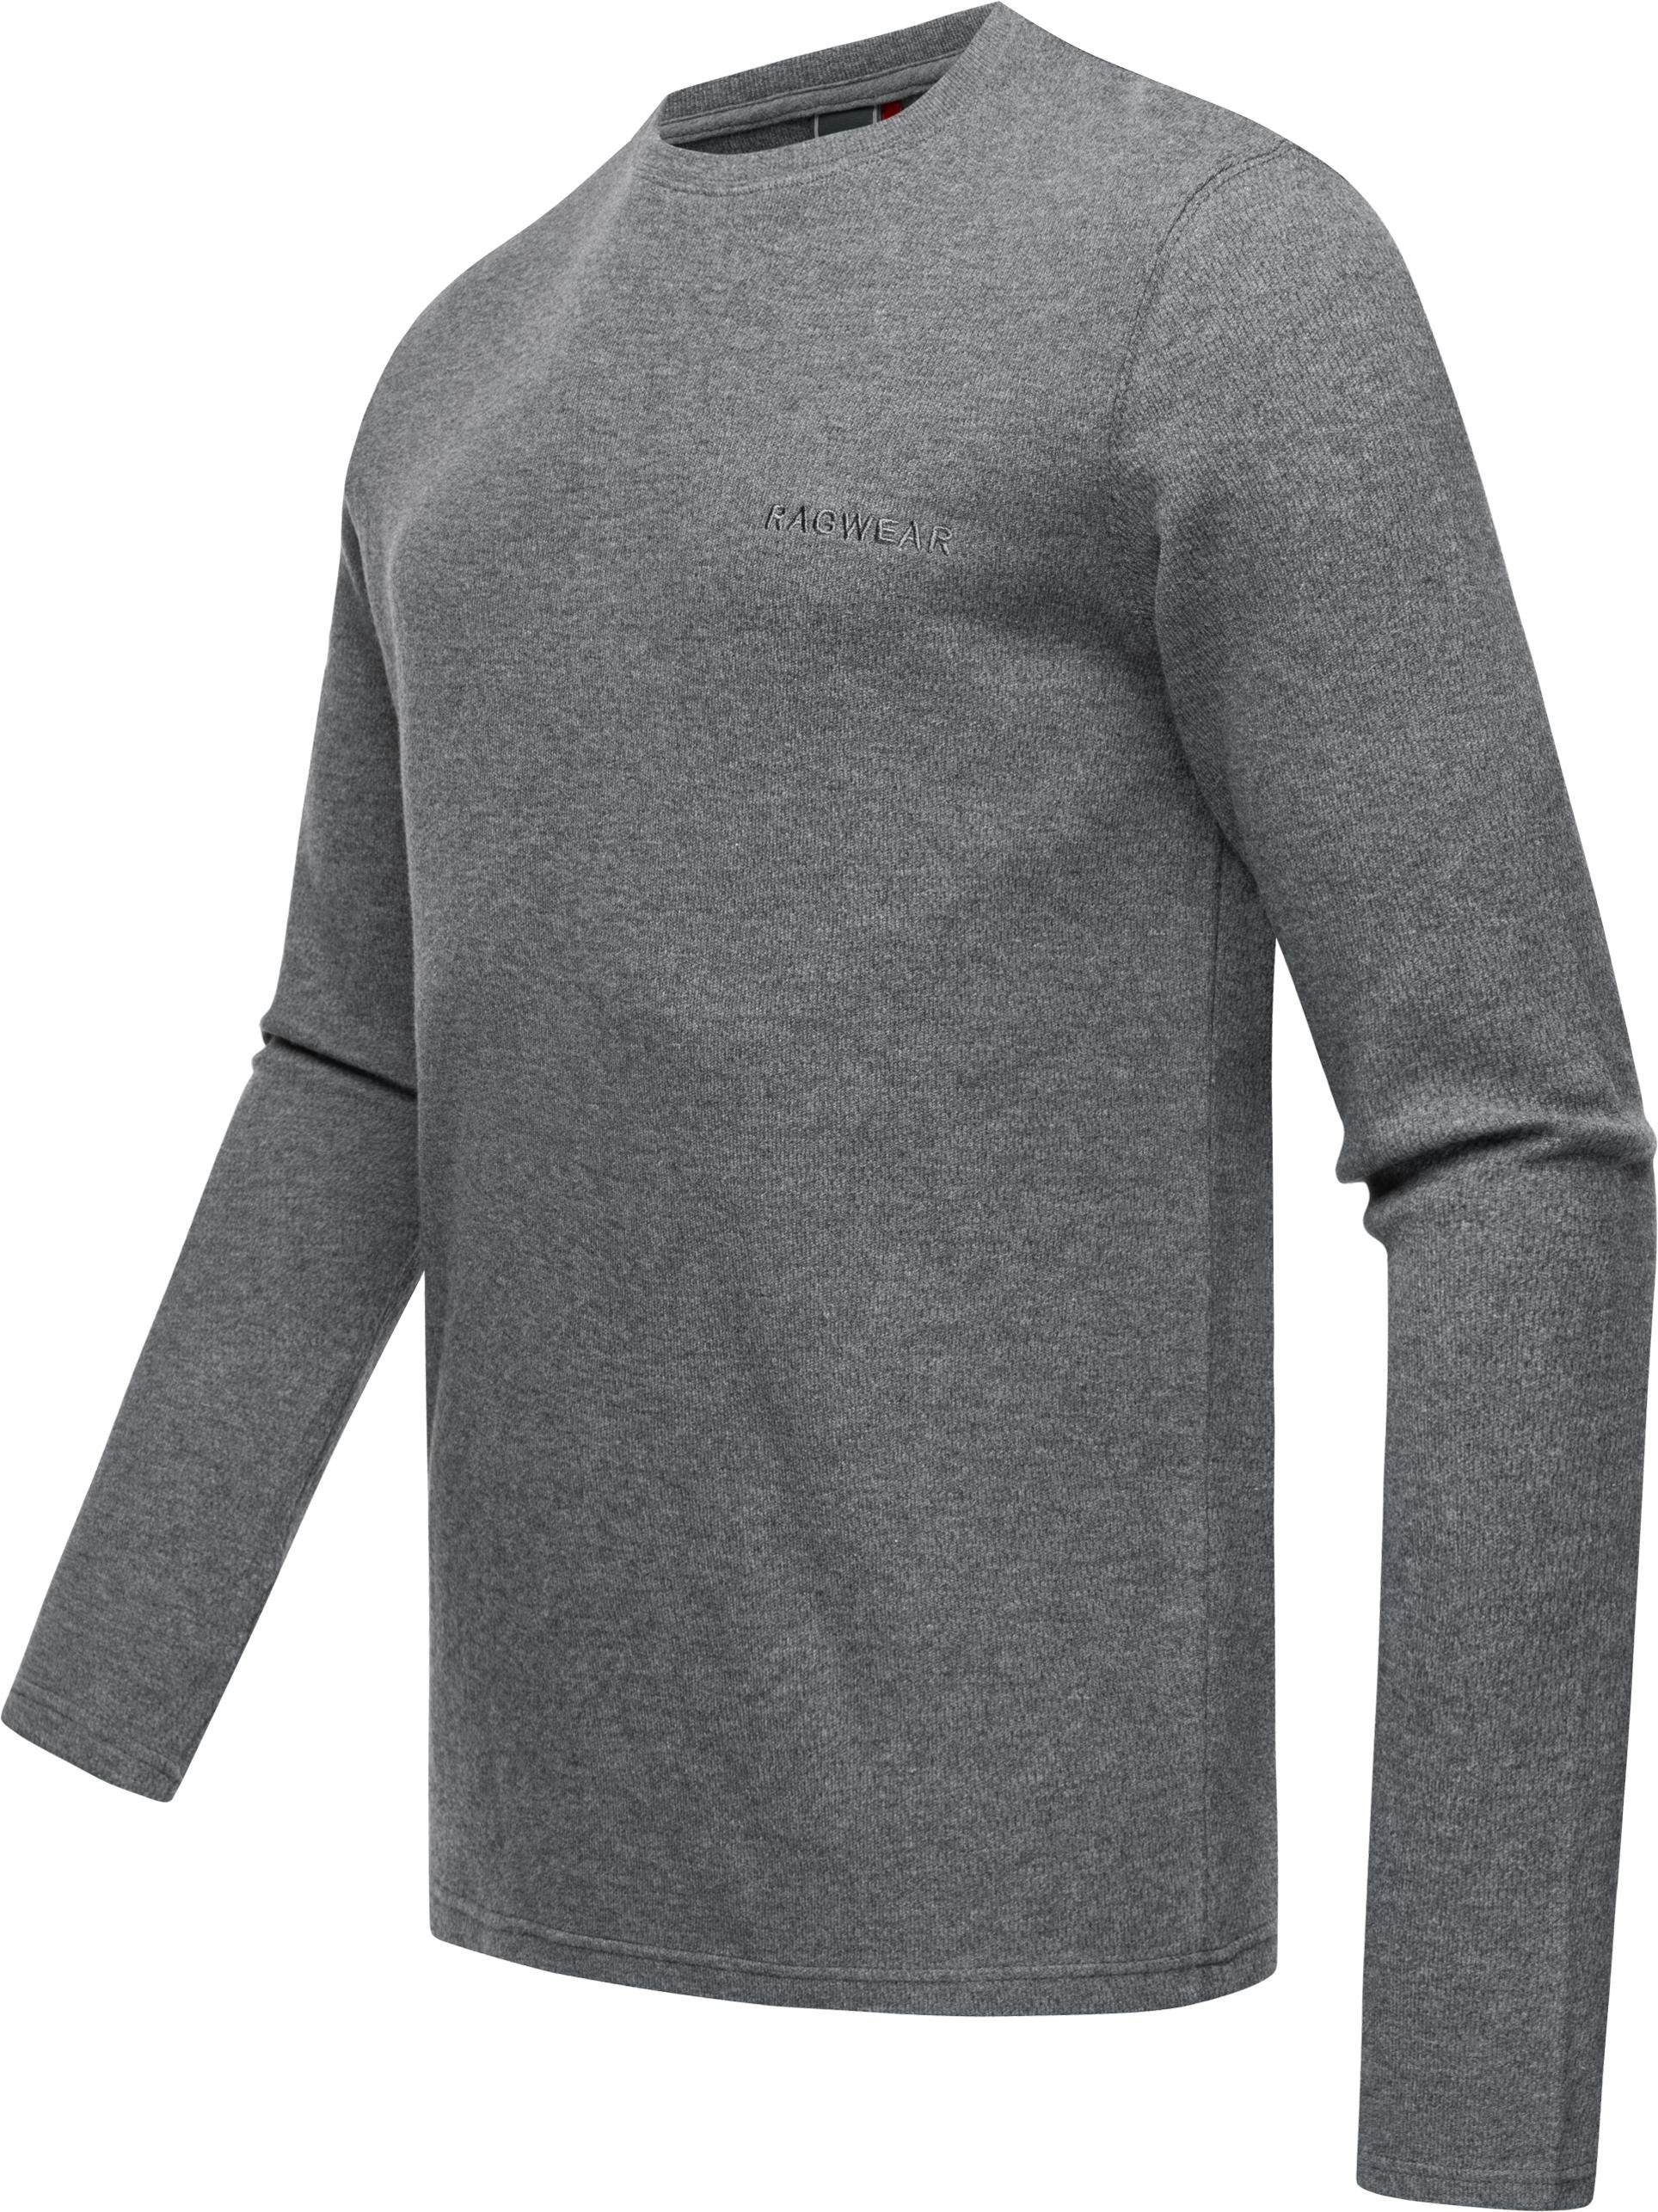 Ragwear Sweatshirt Cyen Herren Sweater Der schmiegt leichte an wunderbar an den sich Stylischer leichter Körper Pullover